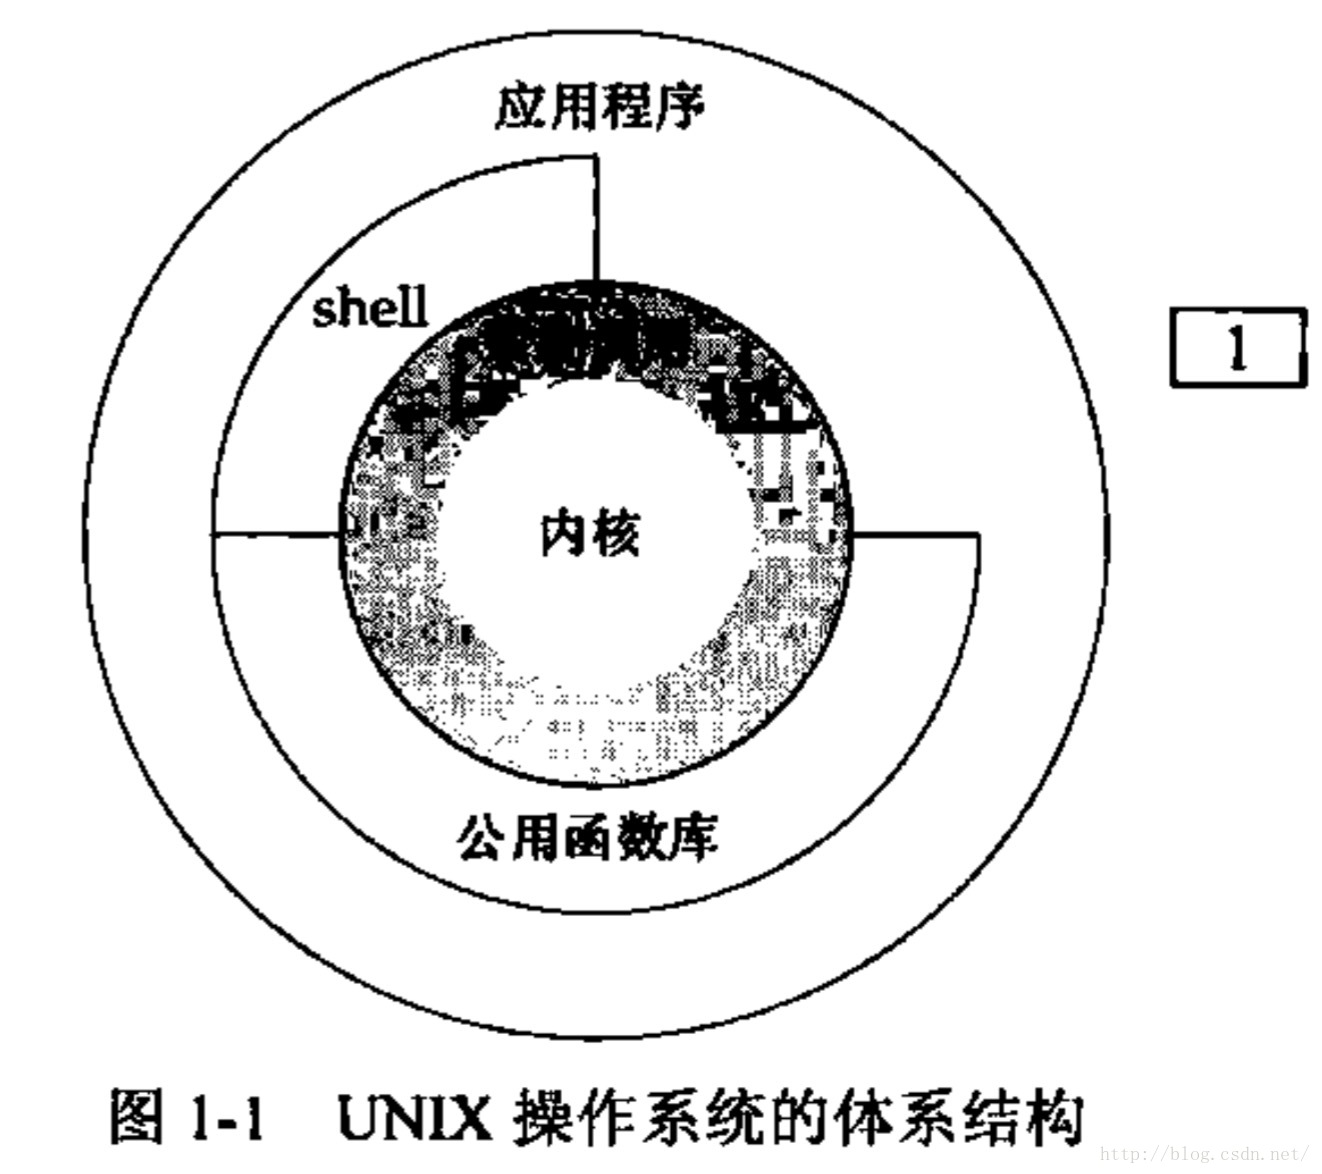 【读书笔记】UNIX环境高级编程-笔记-第一章-UNIX基础知识